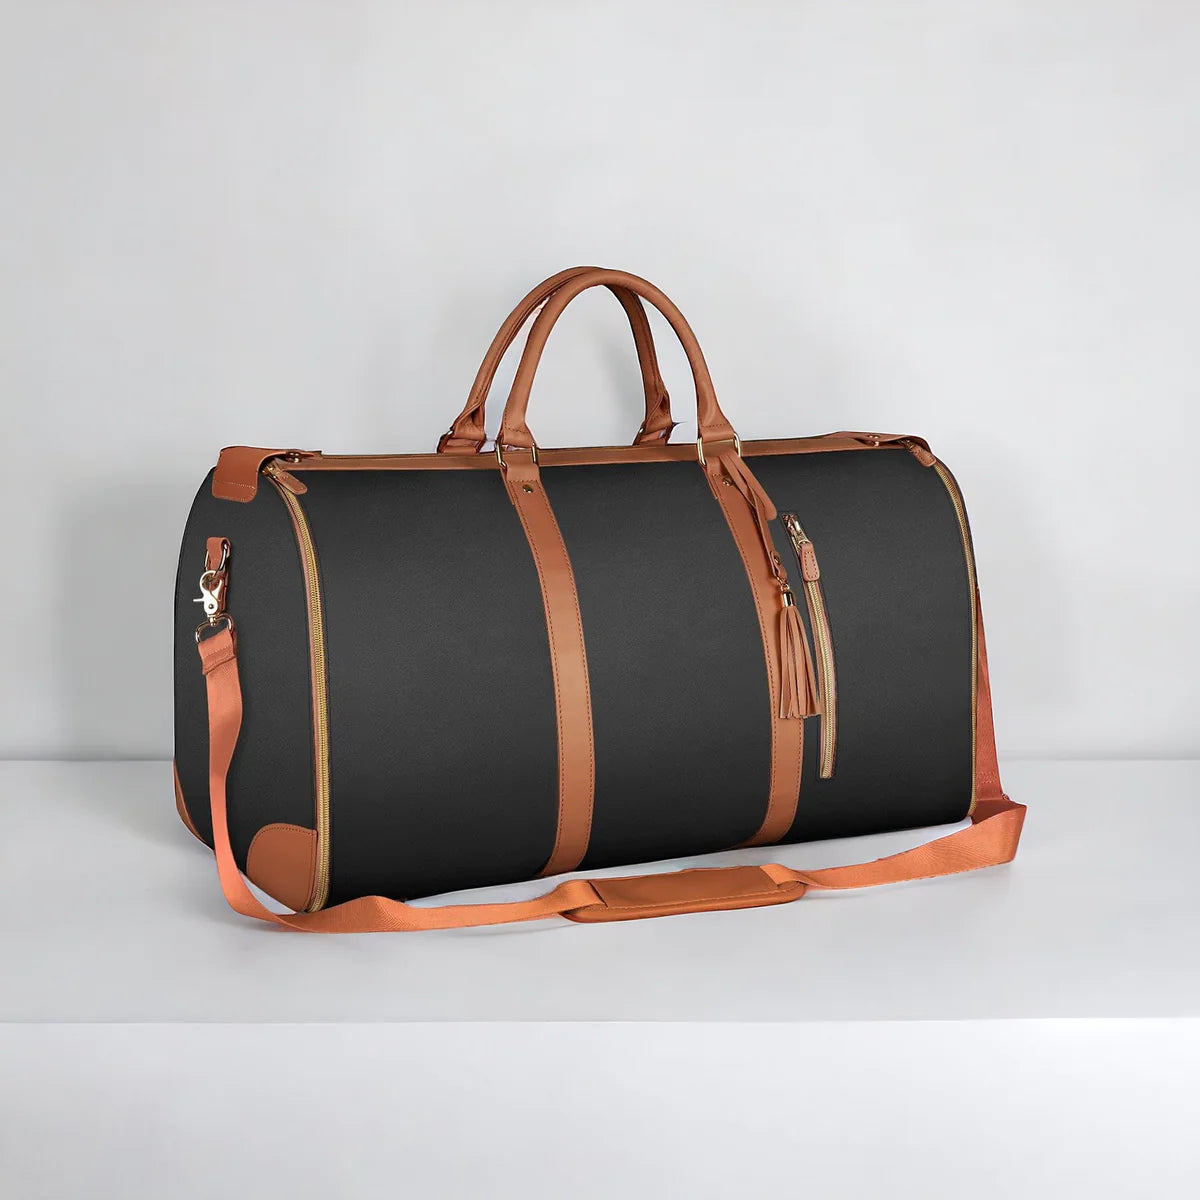 TheTravelThings™ - Foldable Clothing Bag